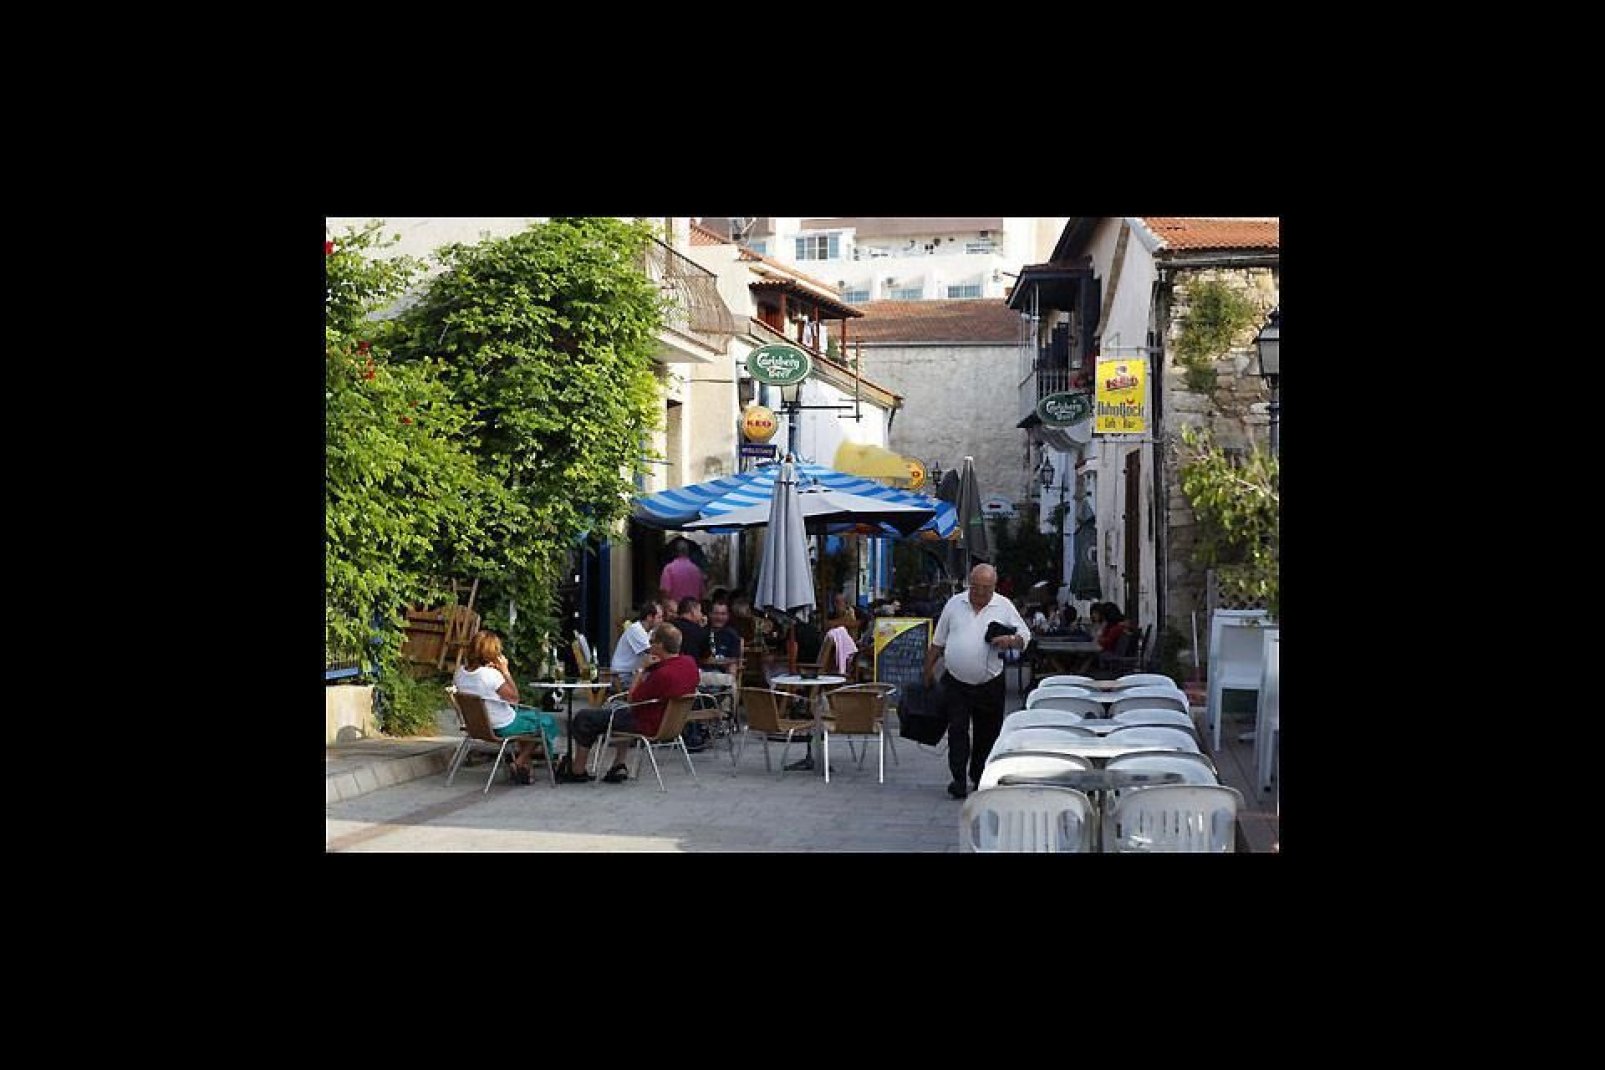 Dietro al celebre lungomare di Larnaca, le stradine del quartiere turco sono ugulamente affascinanti.